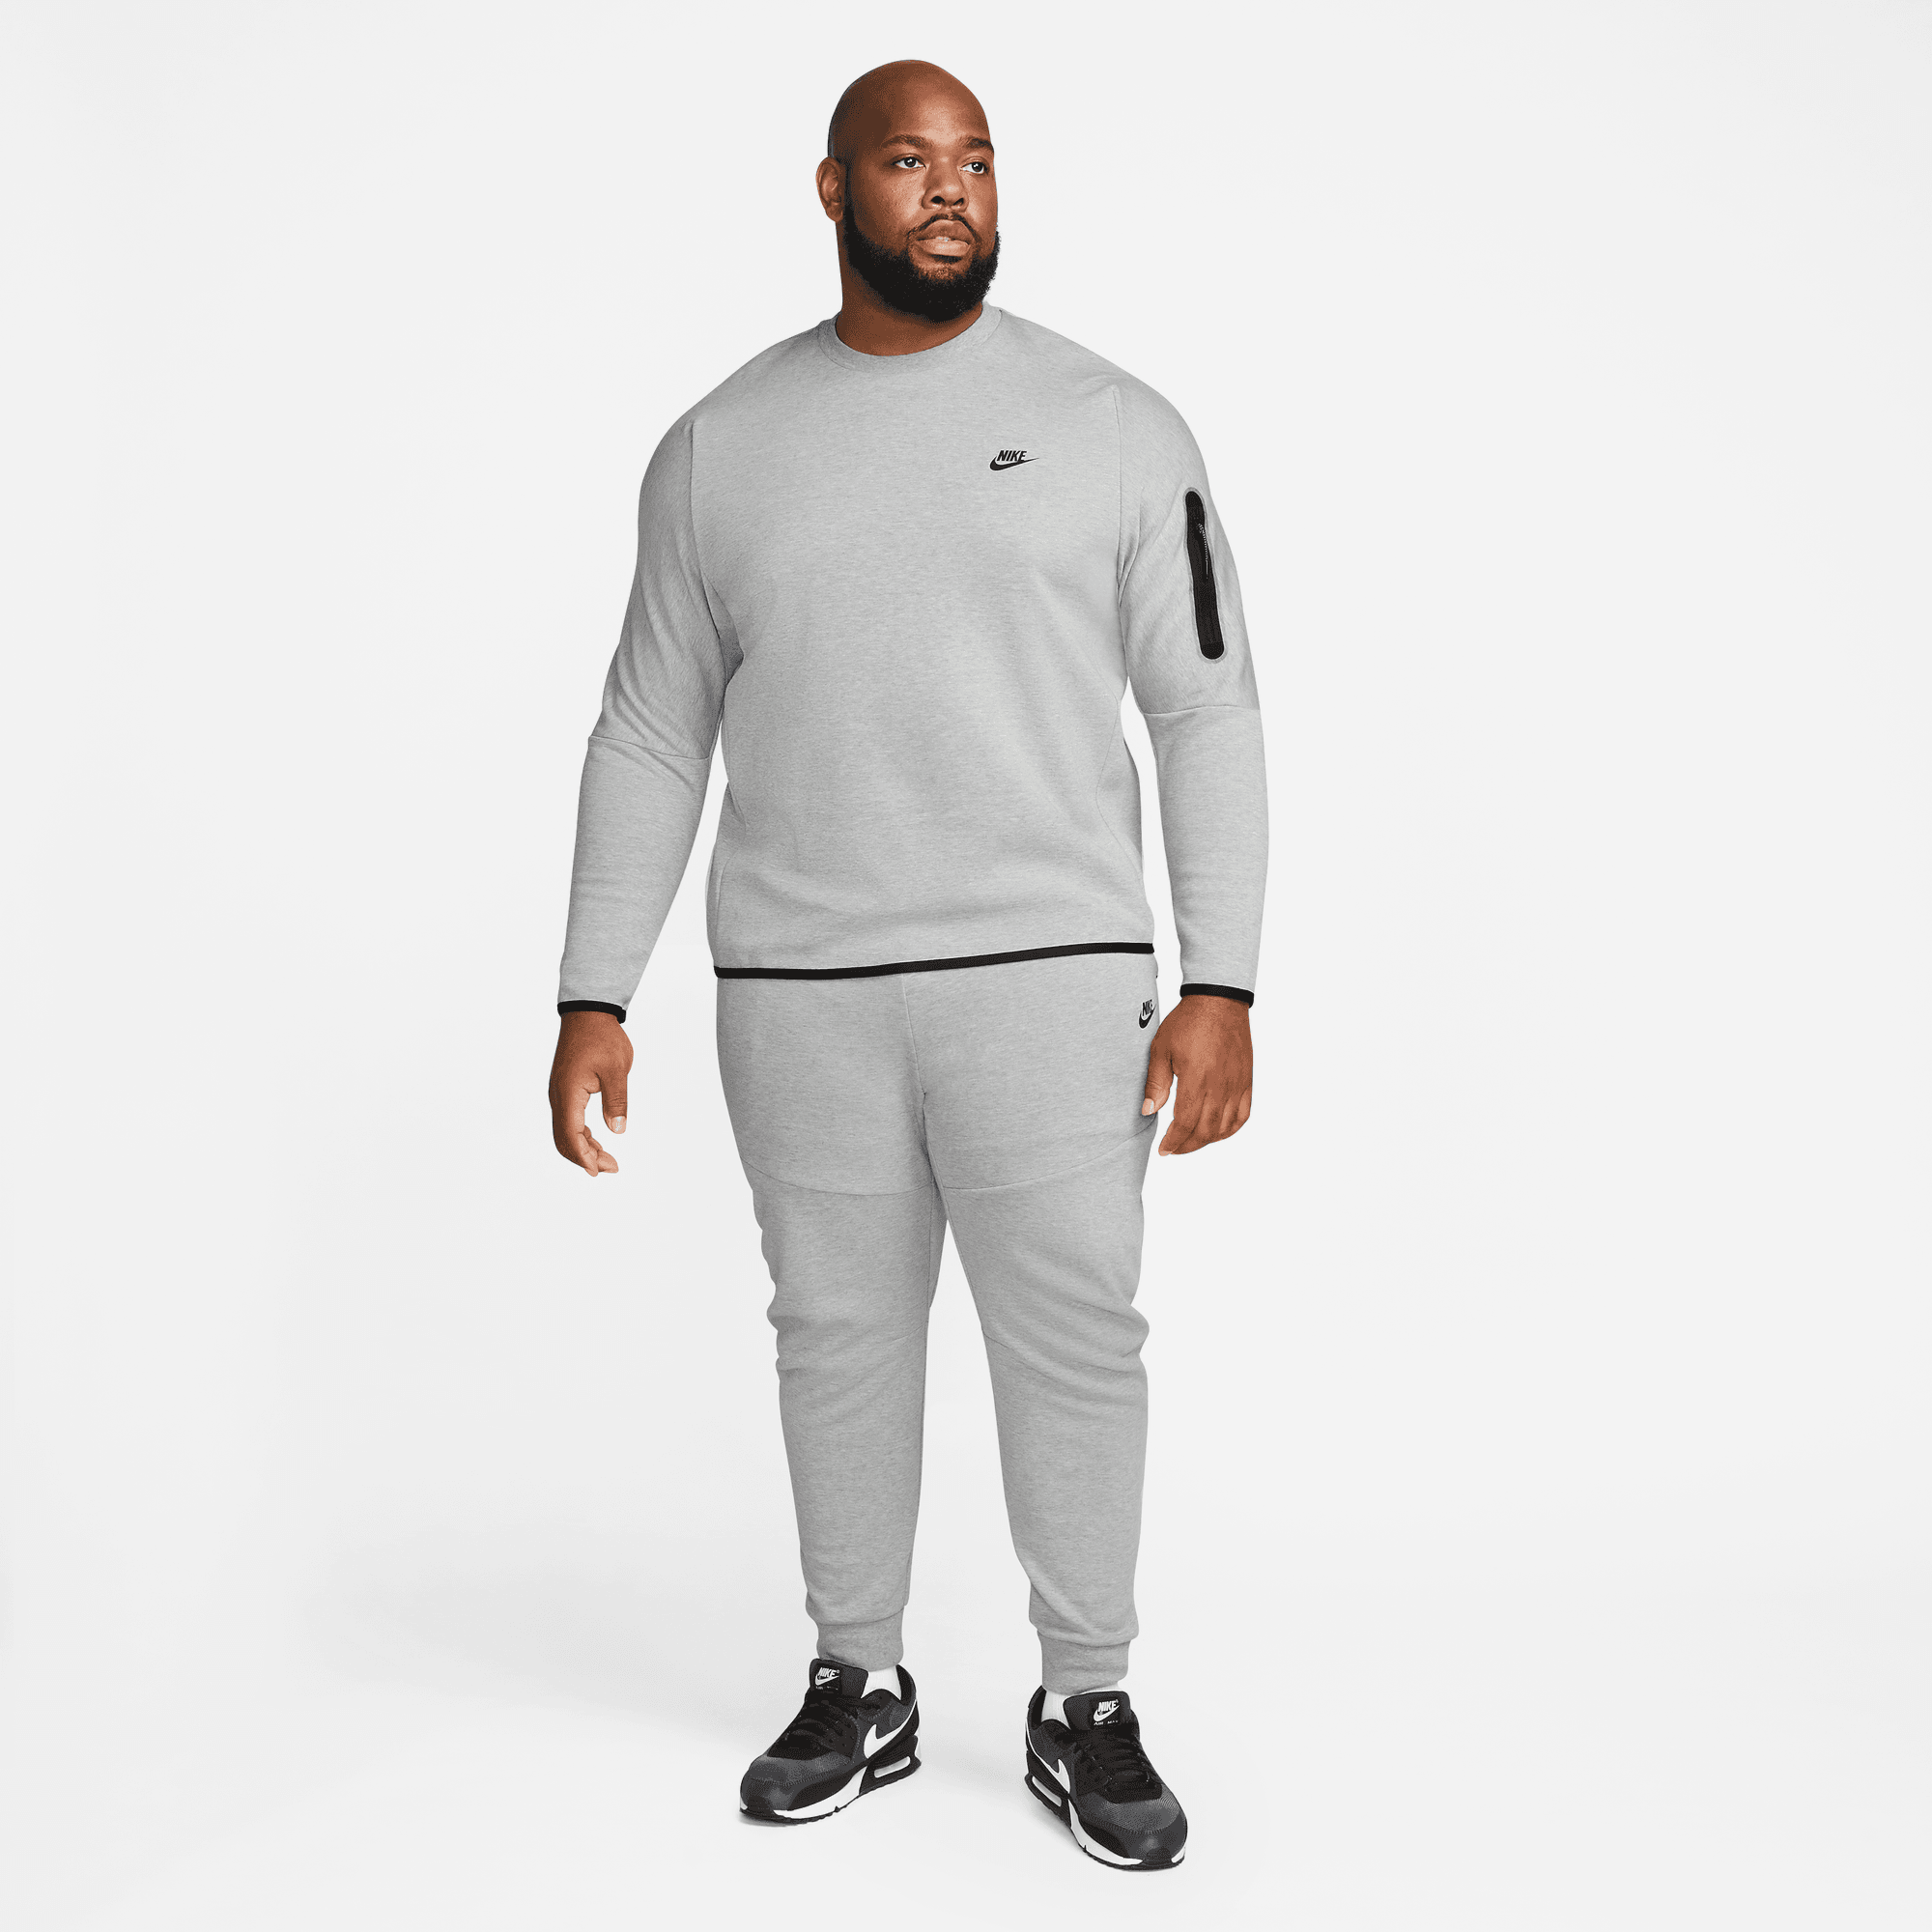 Nike Sportswear Tech Fleece Crew Sweatshirt